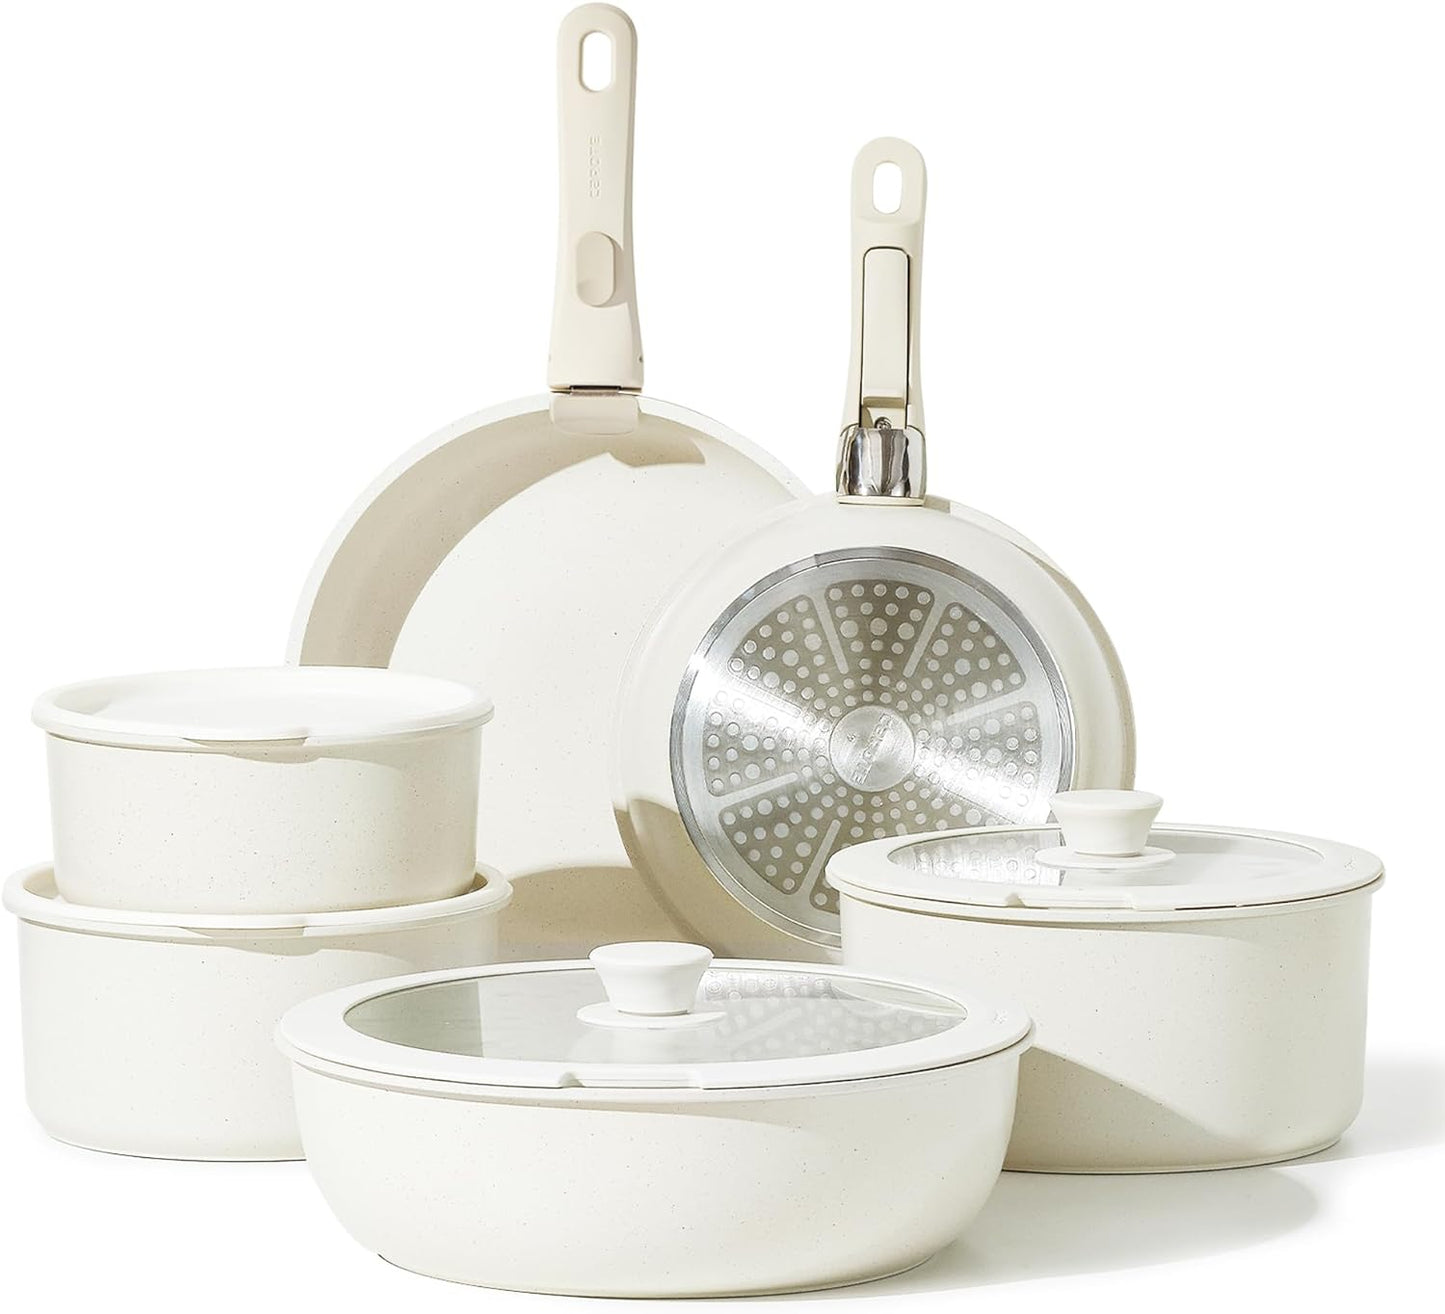 CAROTE 12pcs Pots and Pans Set, Nonstick Cookware Set Detachable Handle, Induction Kitchen Cookware Sets Non Stick with Removable Handle, RV Cookware Set, Oven Safe